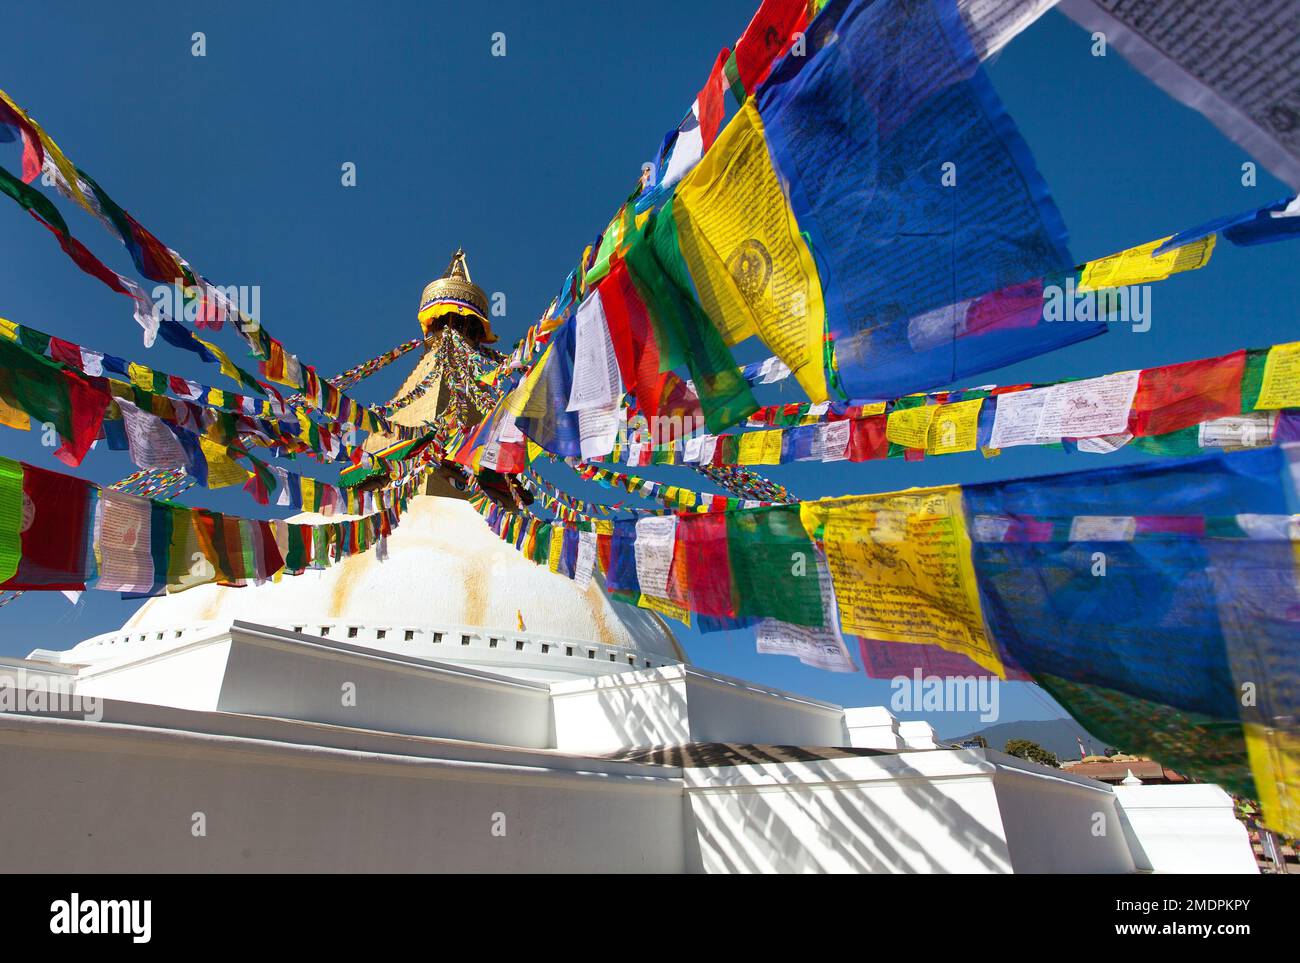 Boudha, bodhnath ou Boudhanath stupa avec des drapeaux de prière, le plus grand stupa bouddhiste dans la ville de Katmandou, le bouddhisme au Népal Banque D'Images